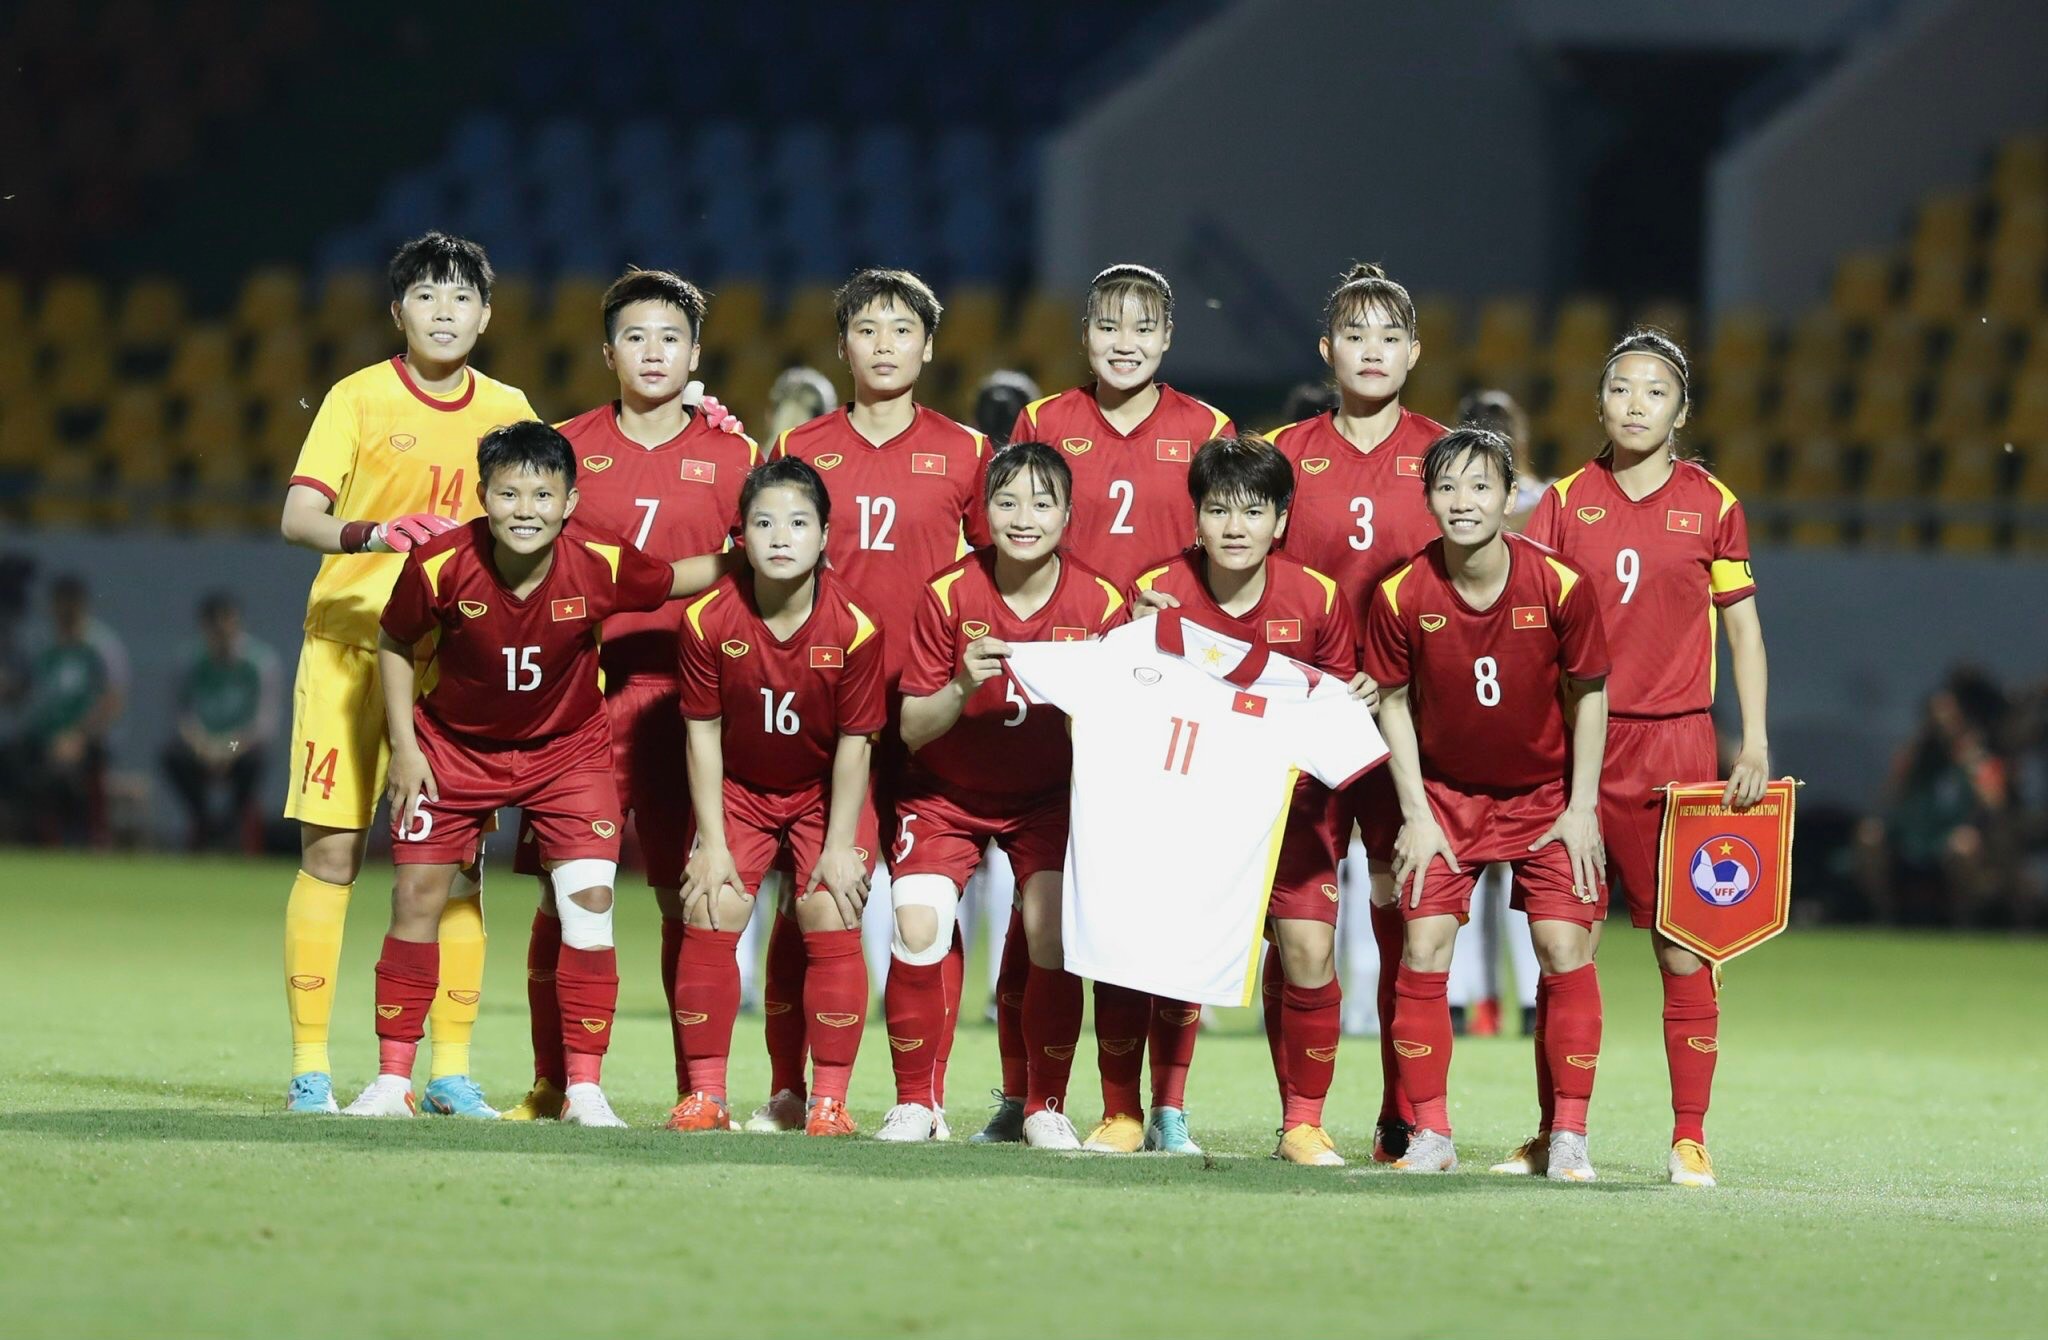 Bán kết bóng đá nữ: Việt Nam - Myanmar (18 giờ ngày 18-5): Mở cánh cửa vô địch lần thứ 7